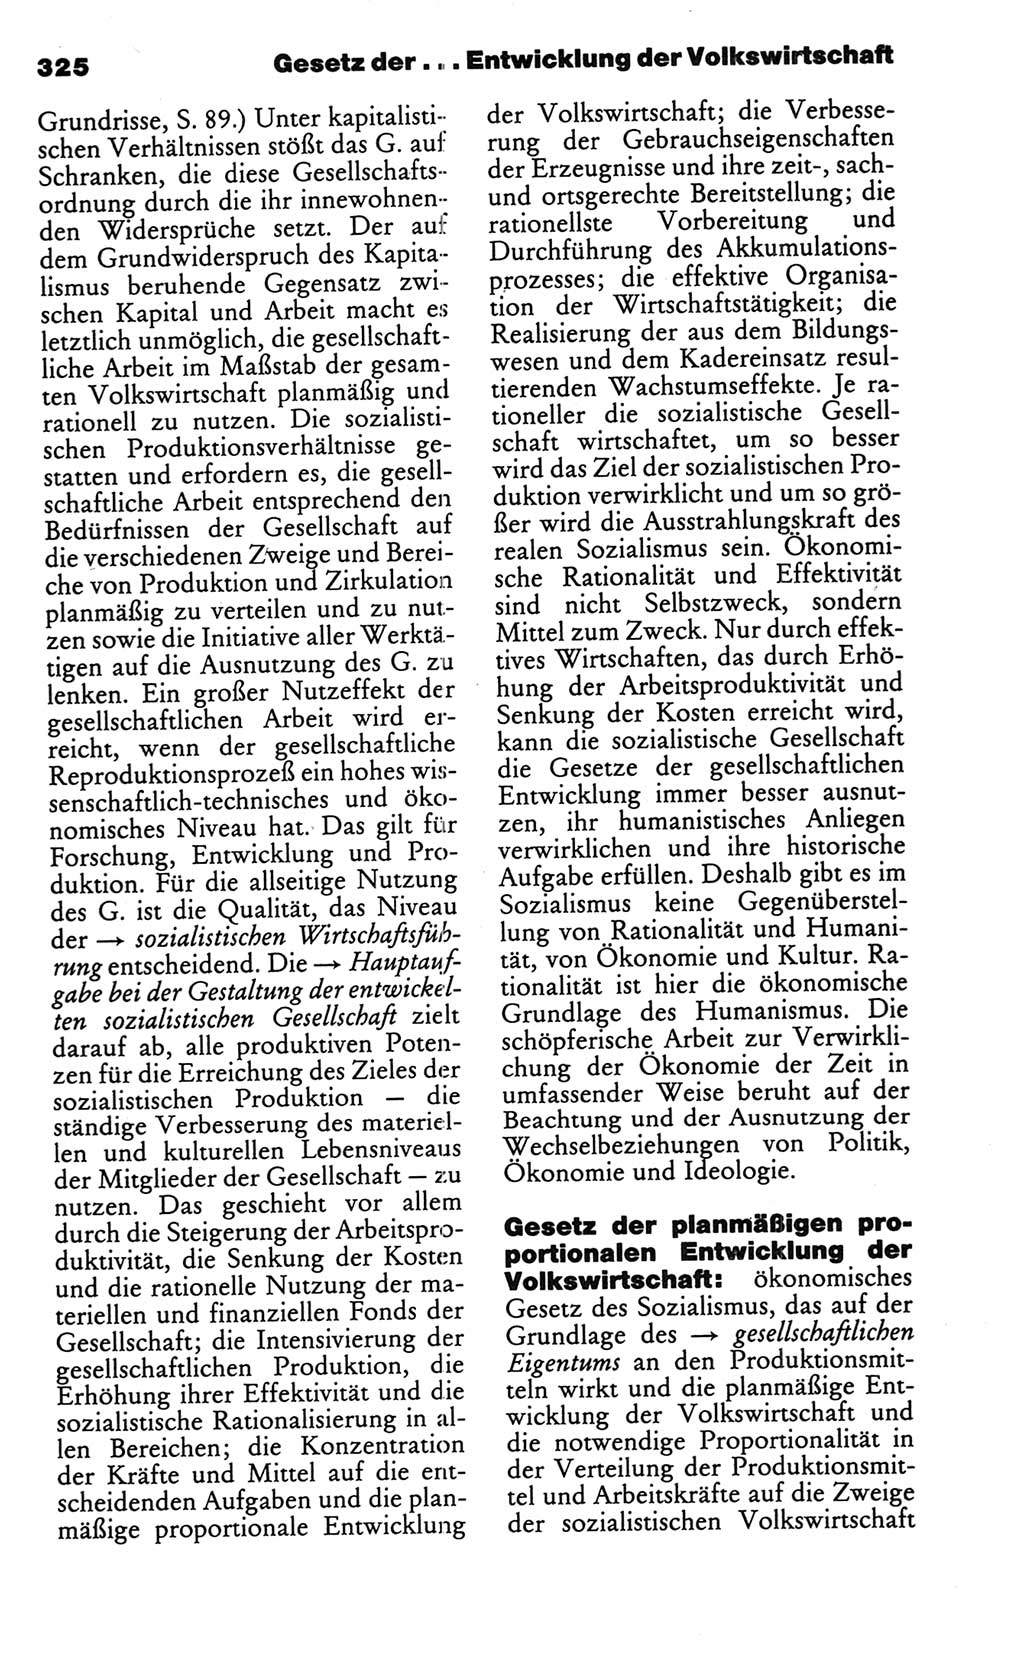 Kleines politisches Wörterbuch [Deutsche Demokratische Republik (DDR)] 1986, Seite 325 (Kl. pol. Wb. DDR 1986, S. 325)